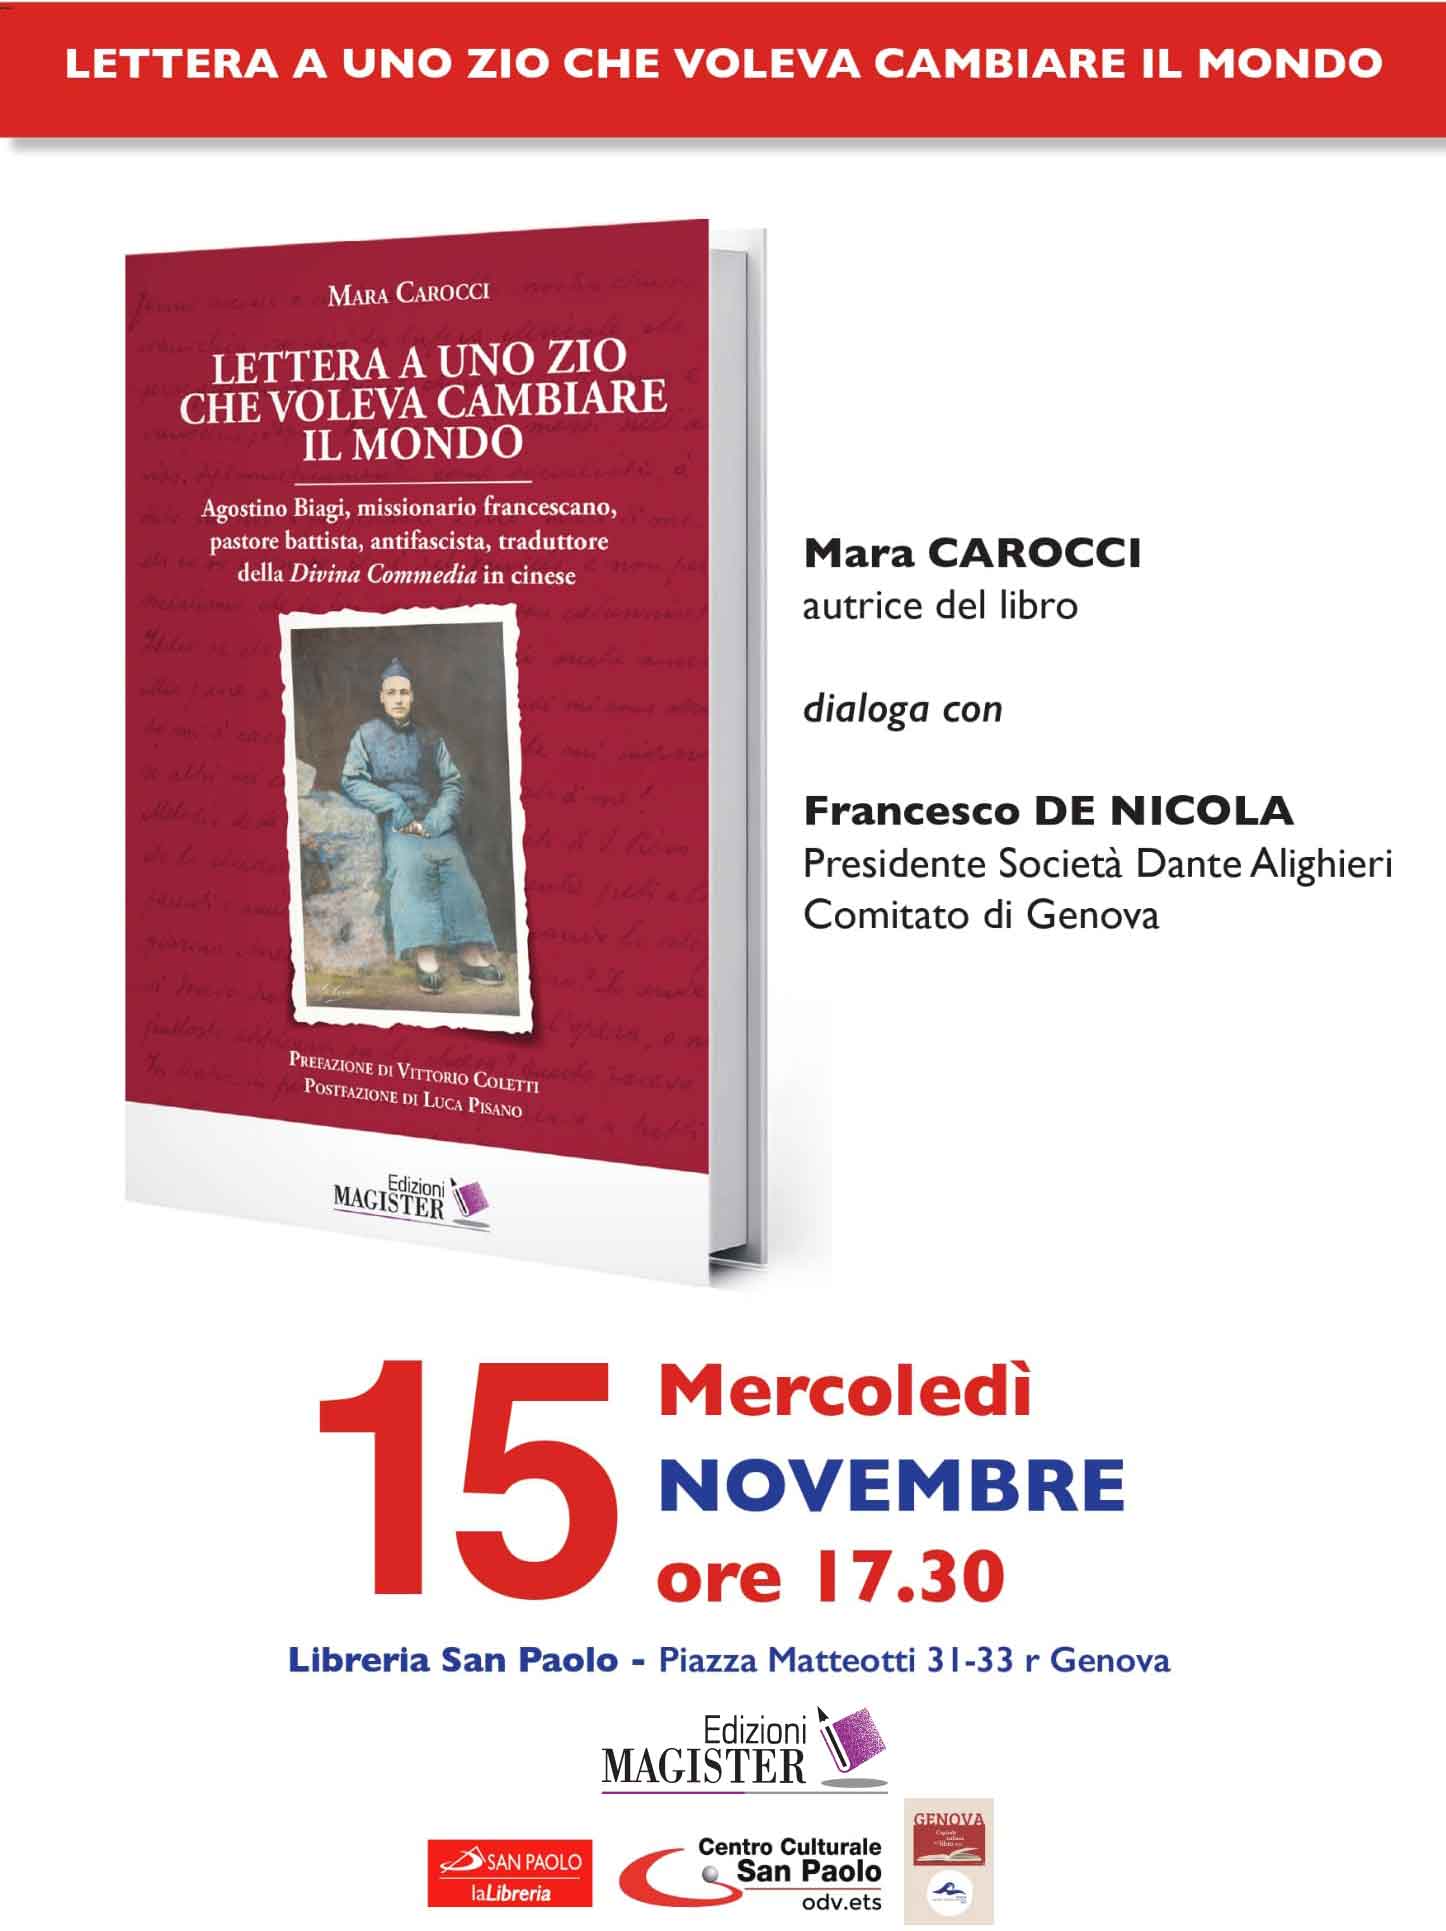 Mara Carocci presenta nella libreria San Paolo di Genova il libro "Lettera a uno zio che voleva cambiare il mondo", Edizioni Magister